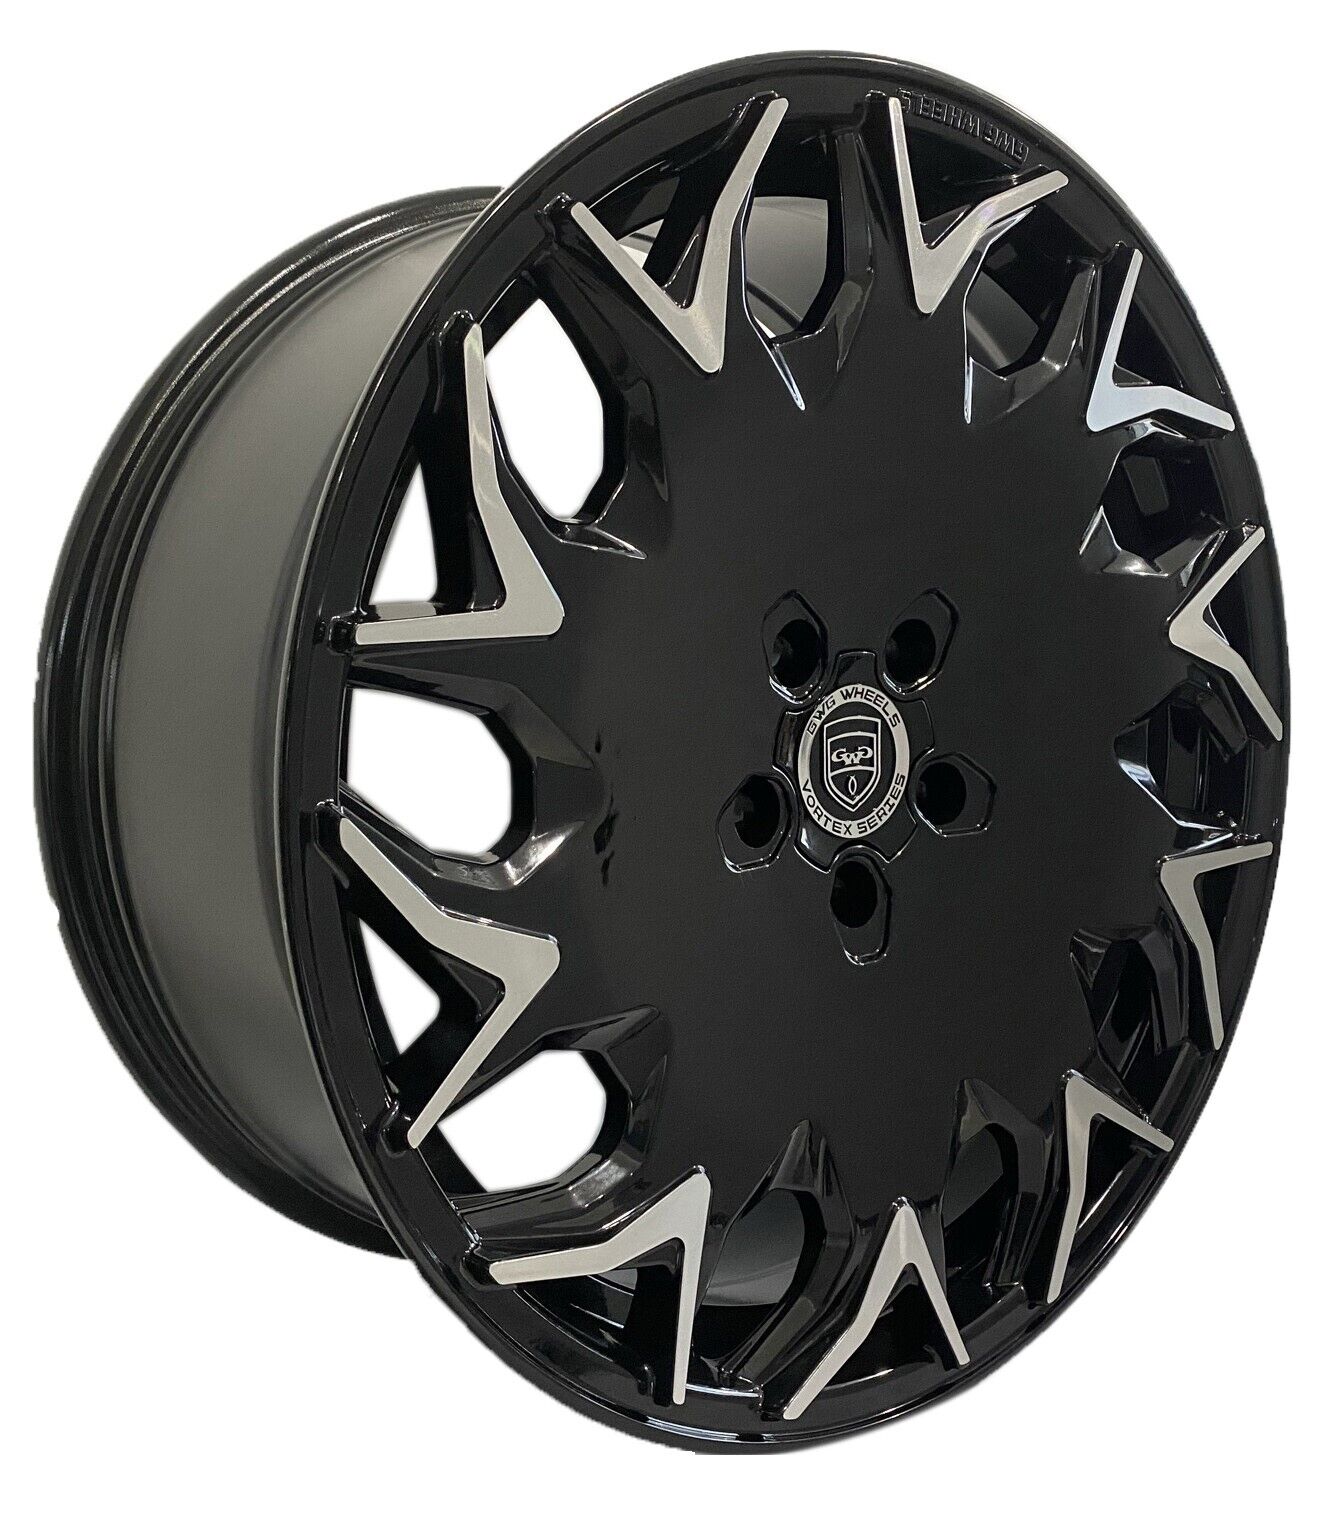 4 GV06 20 inch Staggered Black Rims fits MASERATI QUATTROPORTE 2005-2020